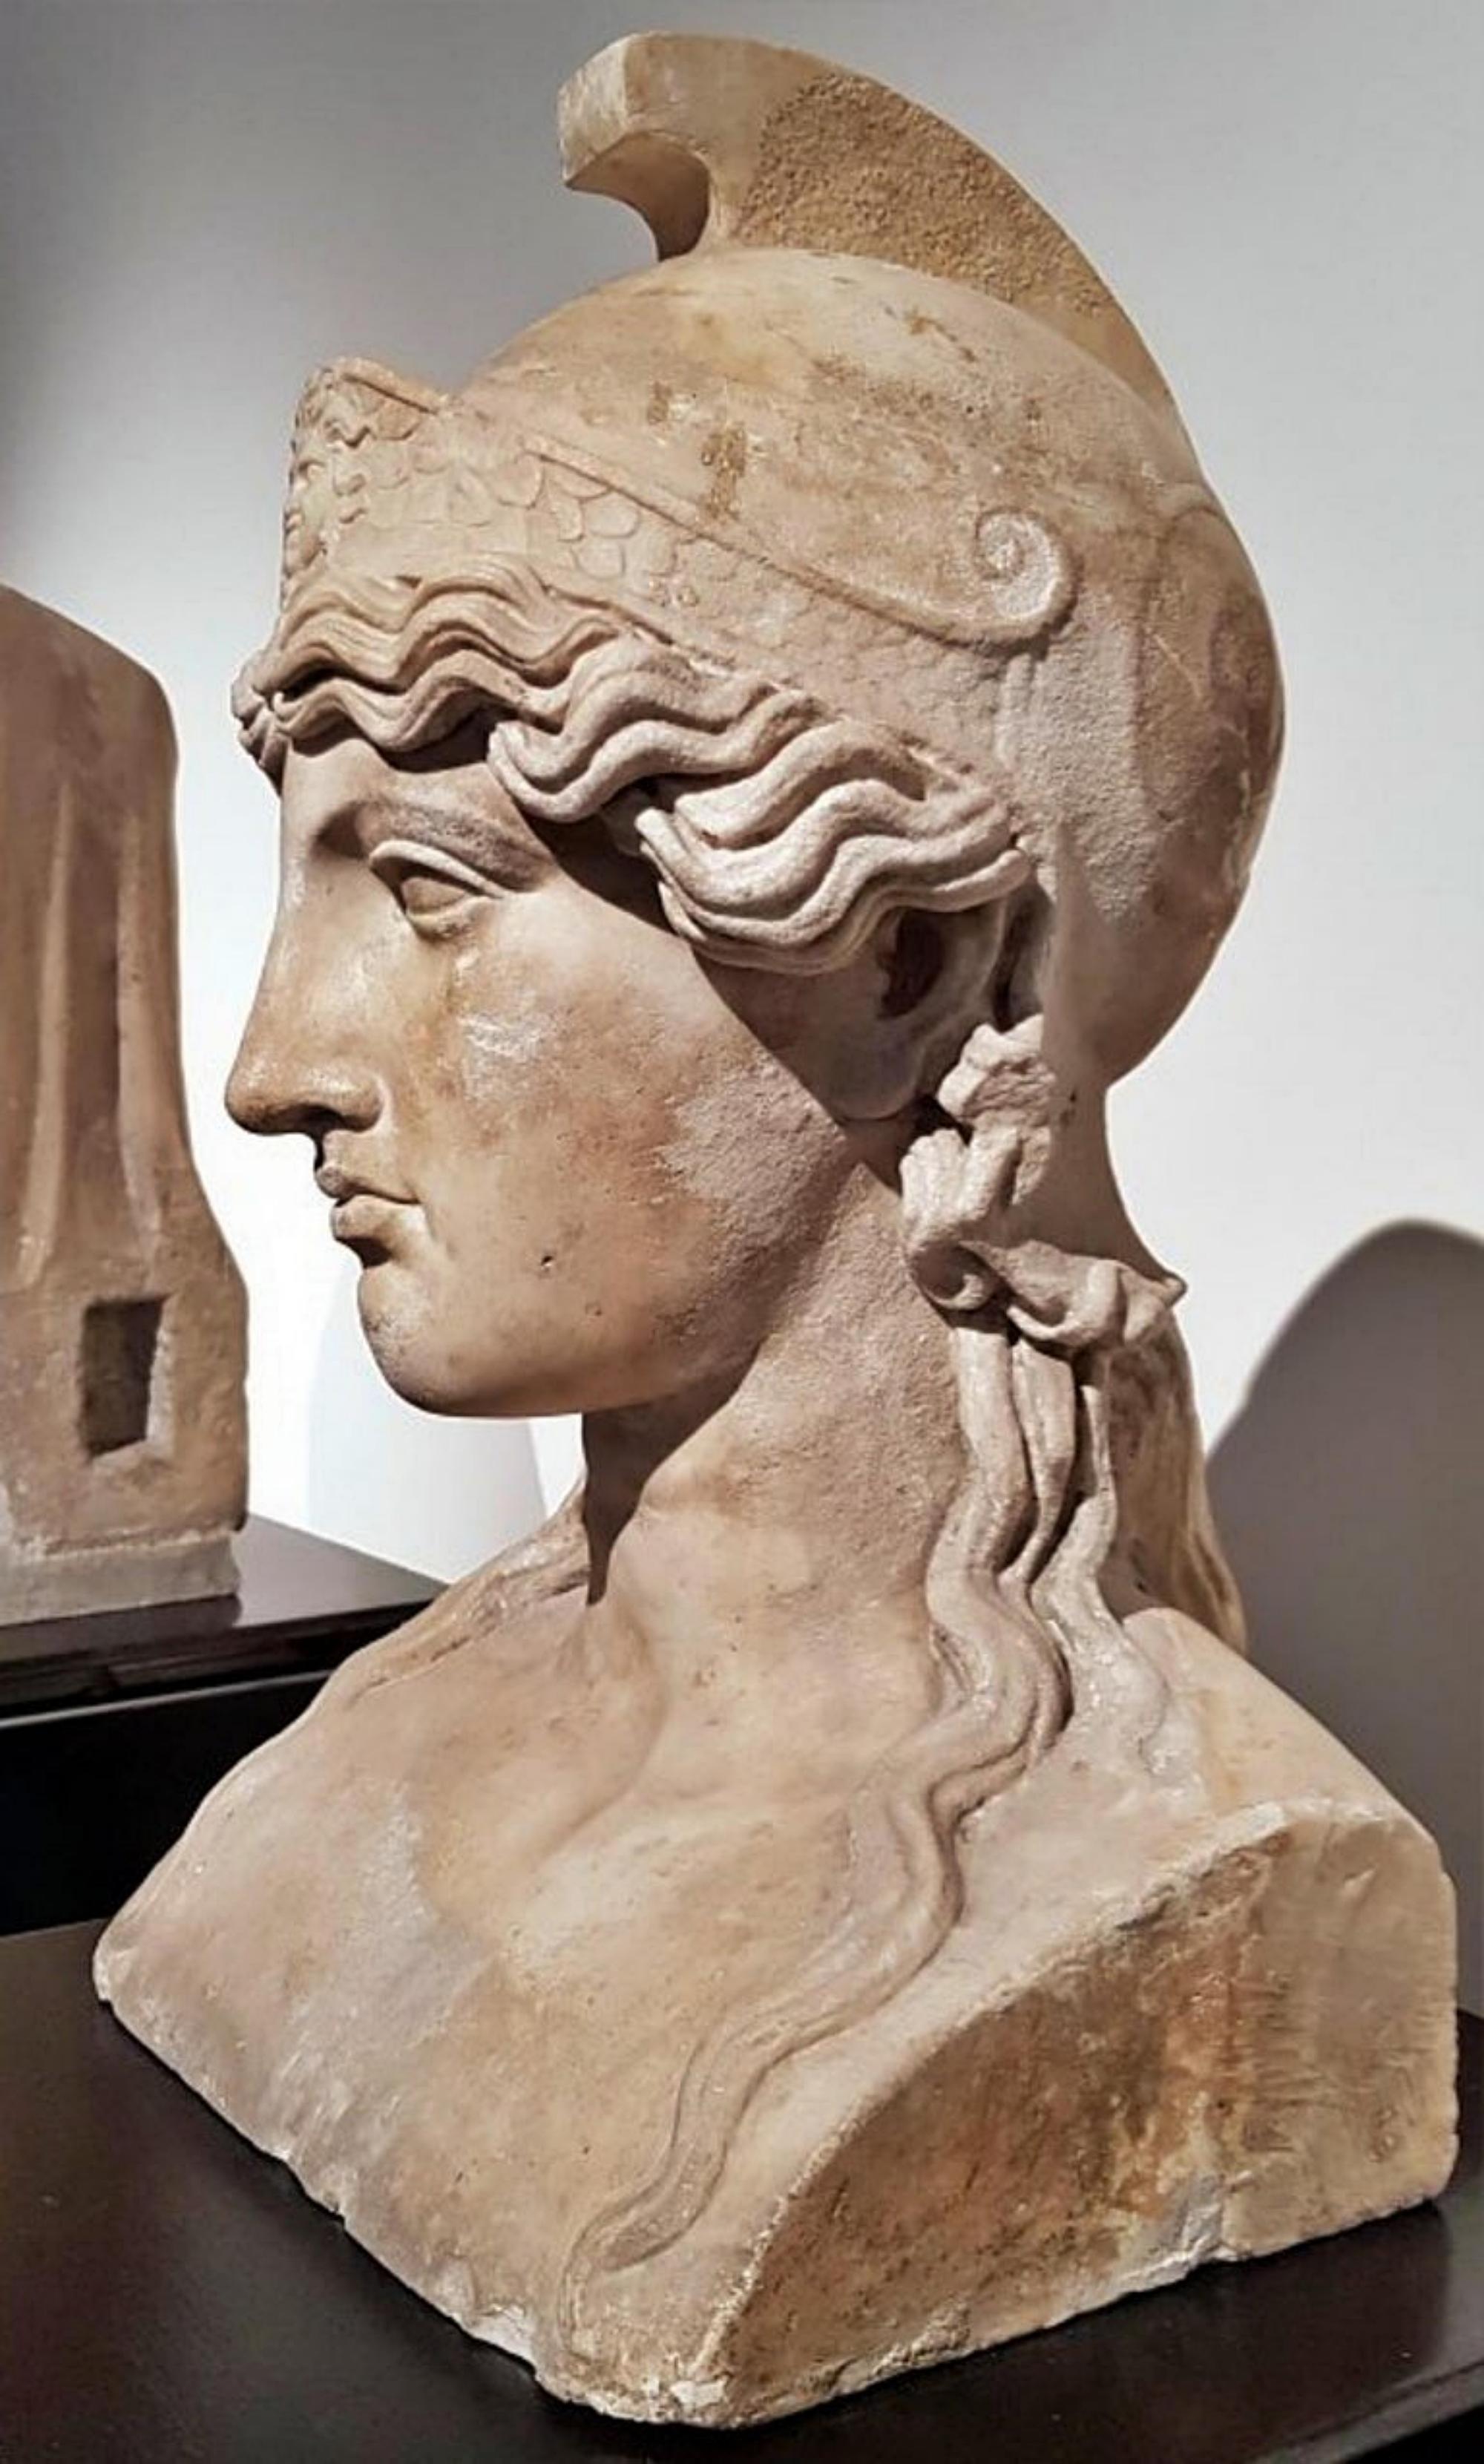 Herm in Terrakotta der Athena des Nationalmuseums von Neapel Anfang des 20.

Herm der Athene aus Terrakotta.
Der Abdruck wurde nach dem handmodellierten Exemplar angefertigt.
Hervorragendes akademisches Exemplar, extrem originalgetreu, siehe